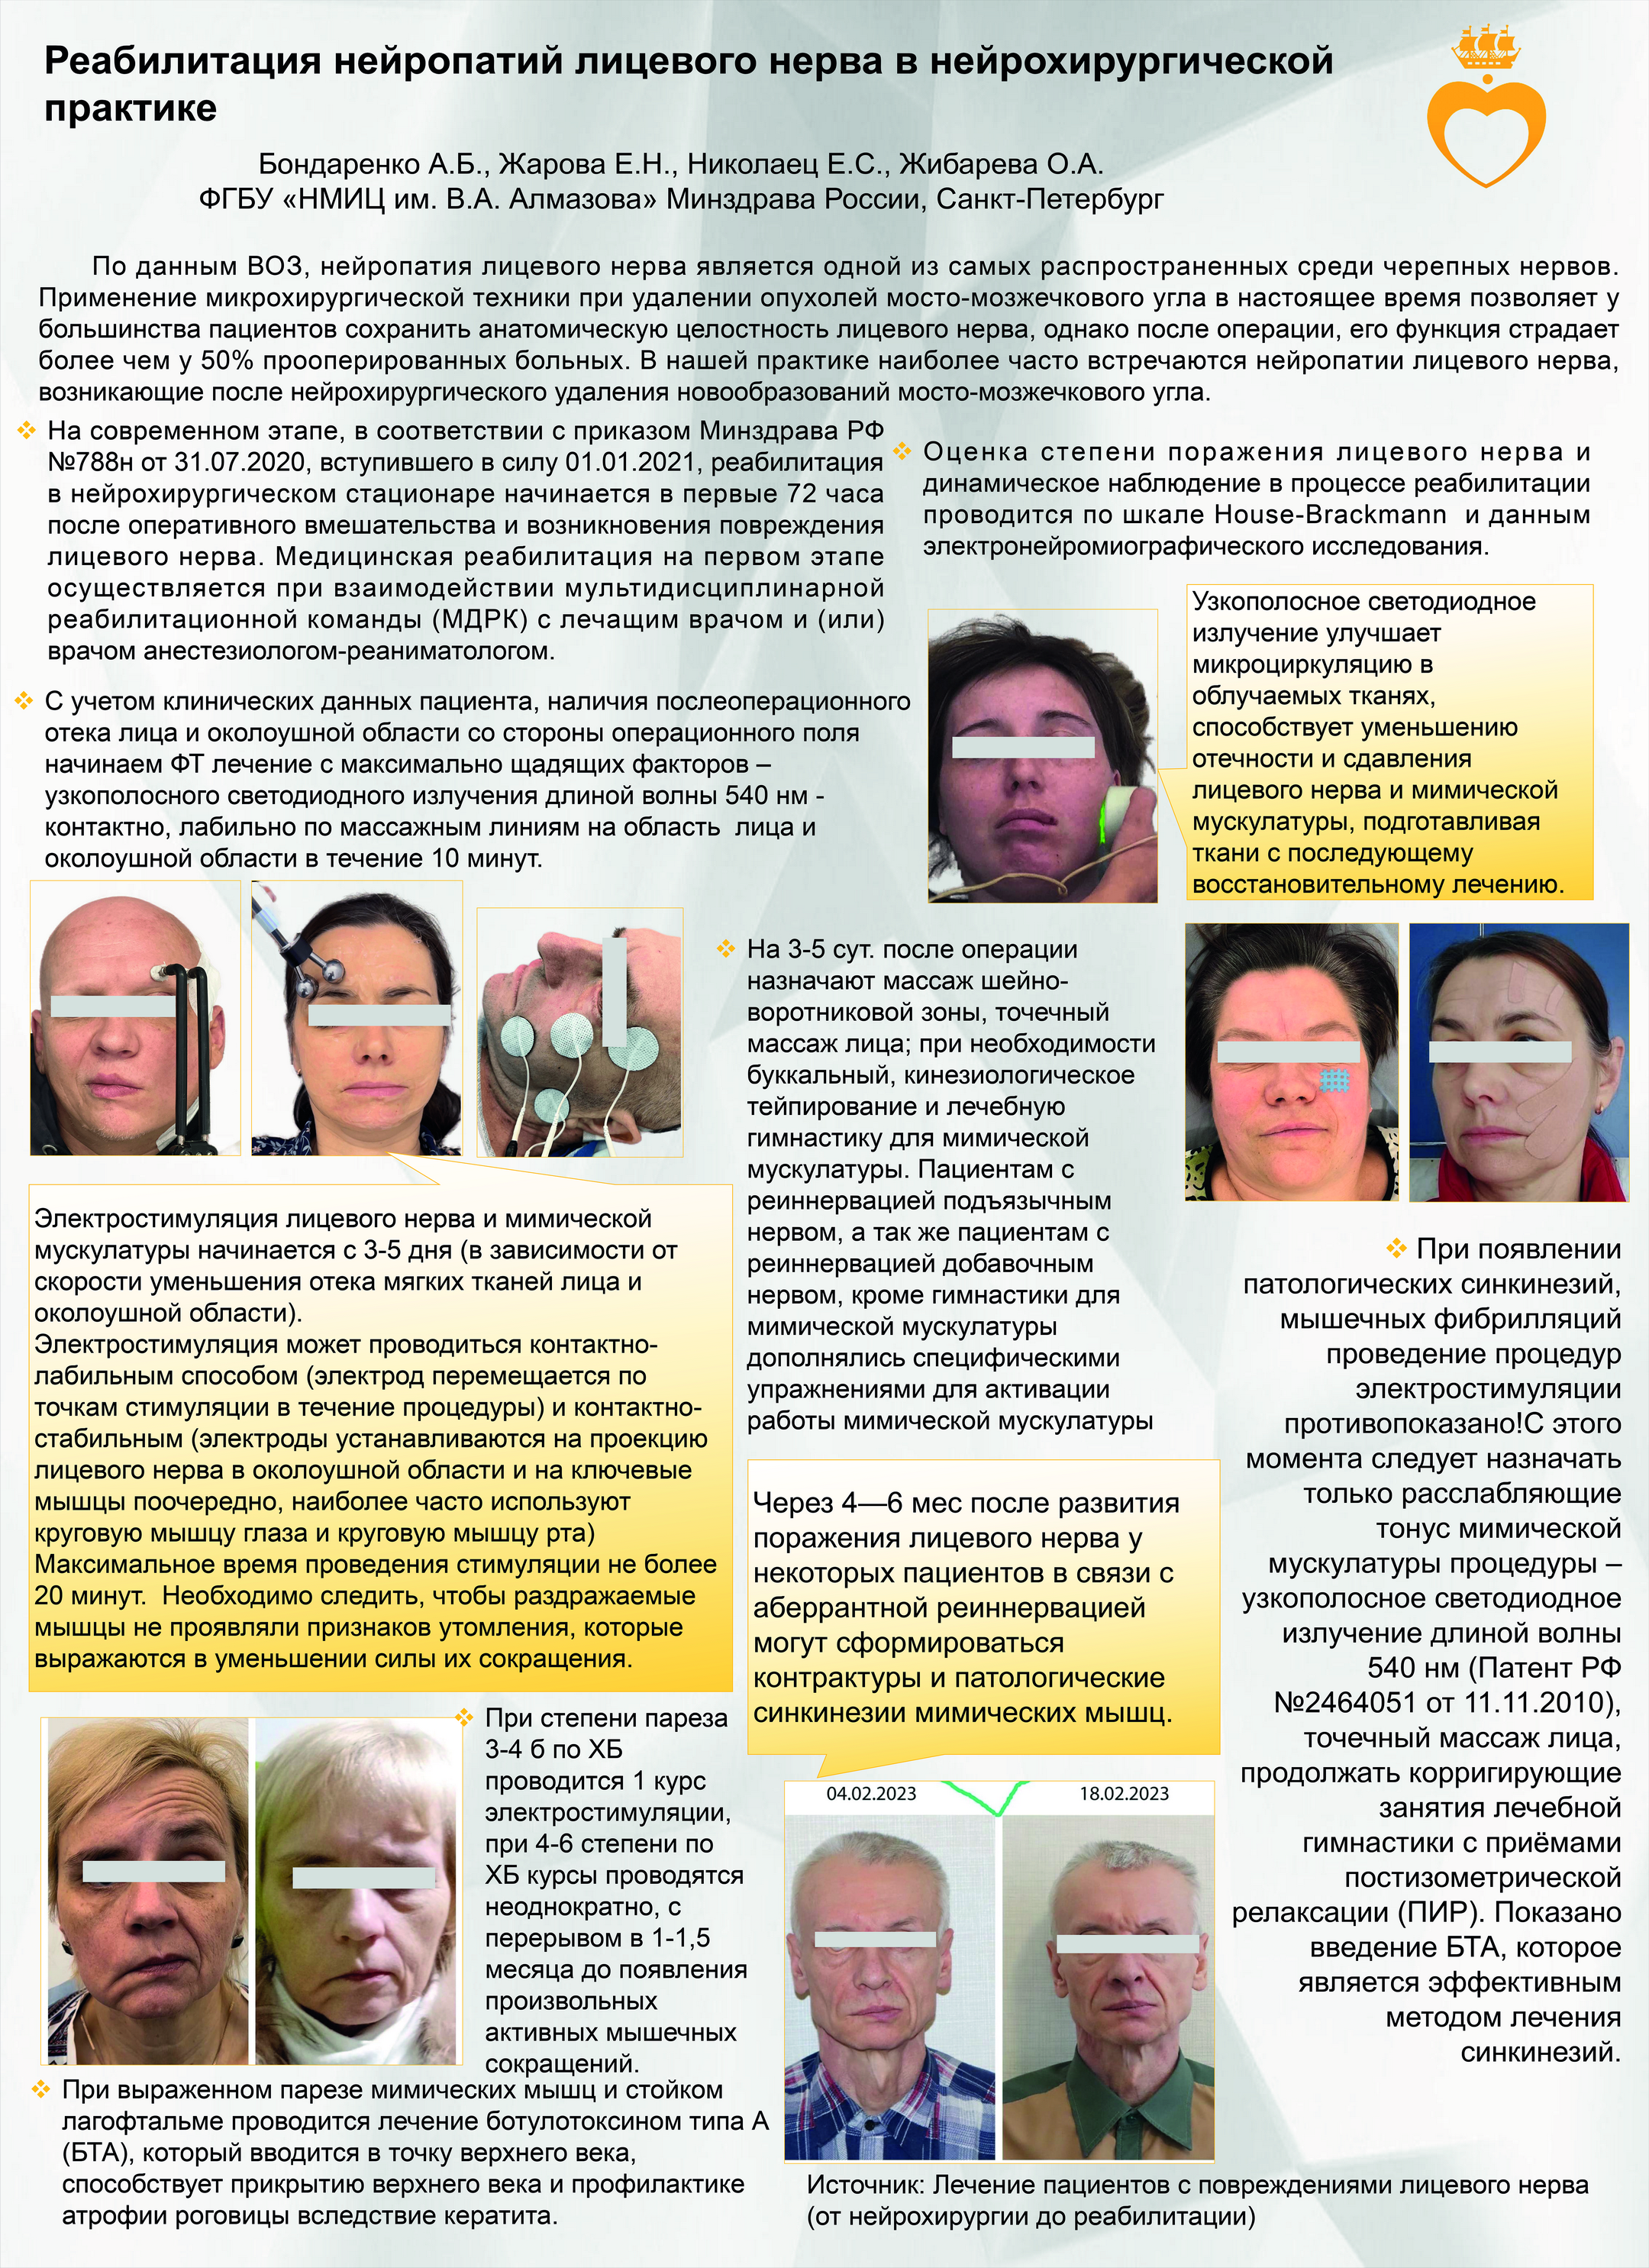 3. Реабилитация нейропатий лицевого нерва в нейрохирургической практике
